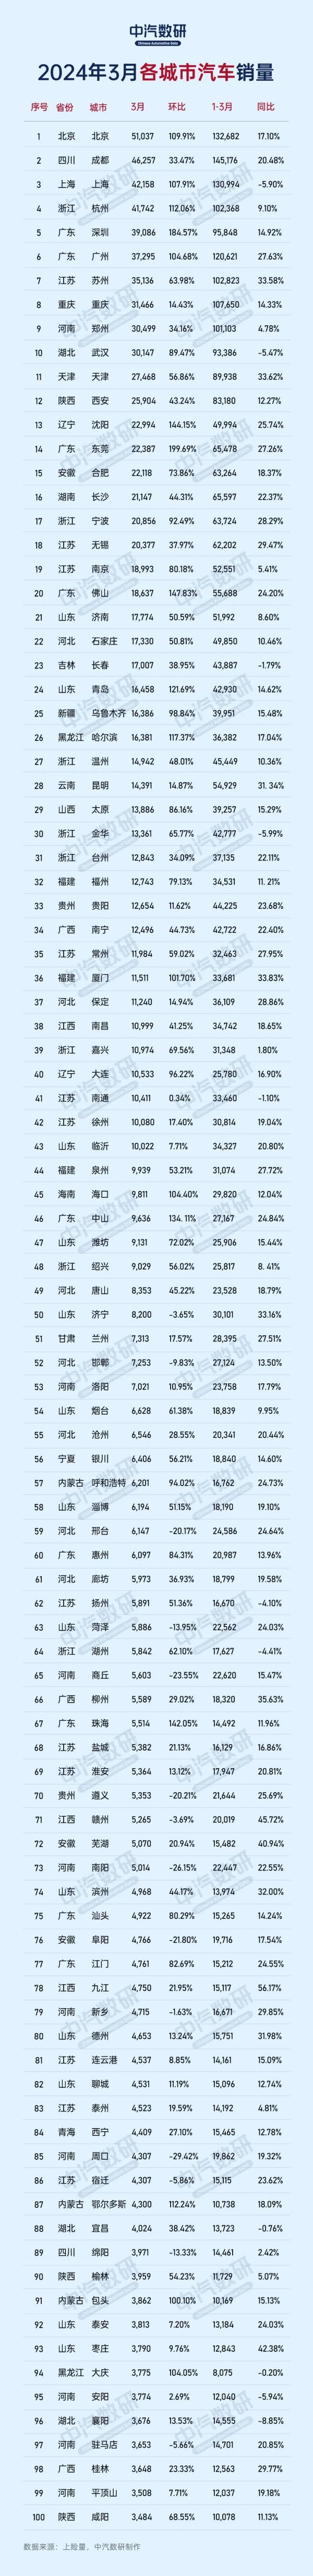 3月全国各城市汽车销量排名:成都超越上海排名第二。